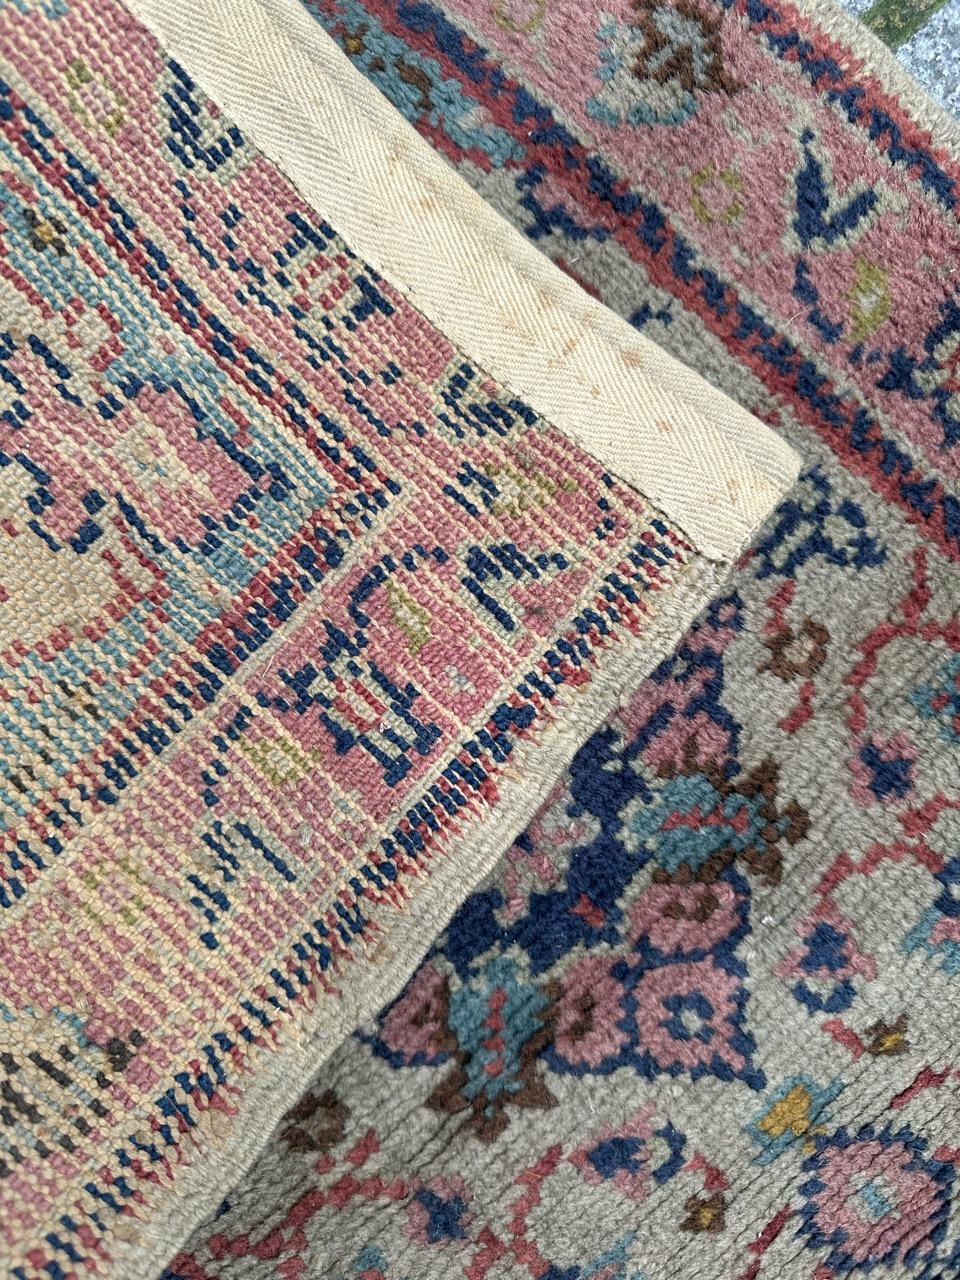 Wool Bobyrug’s little antique Moroccan oushak design rug